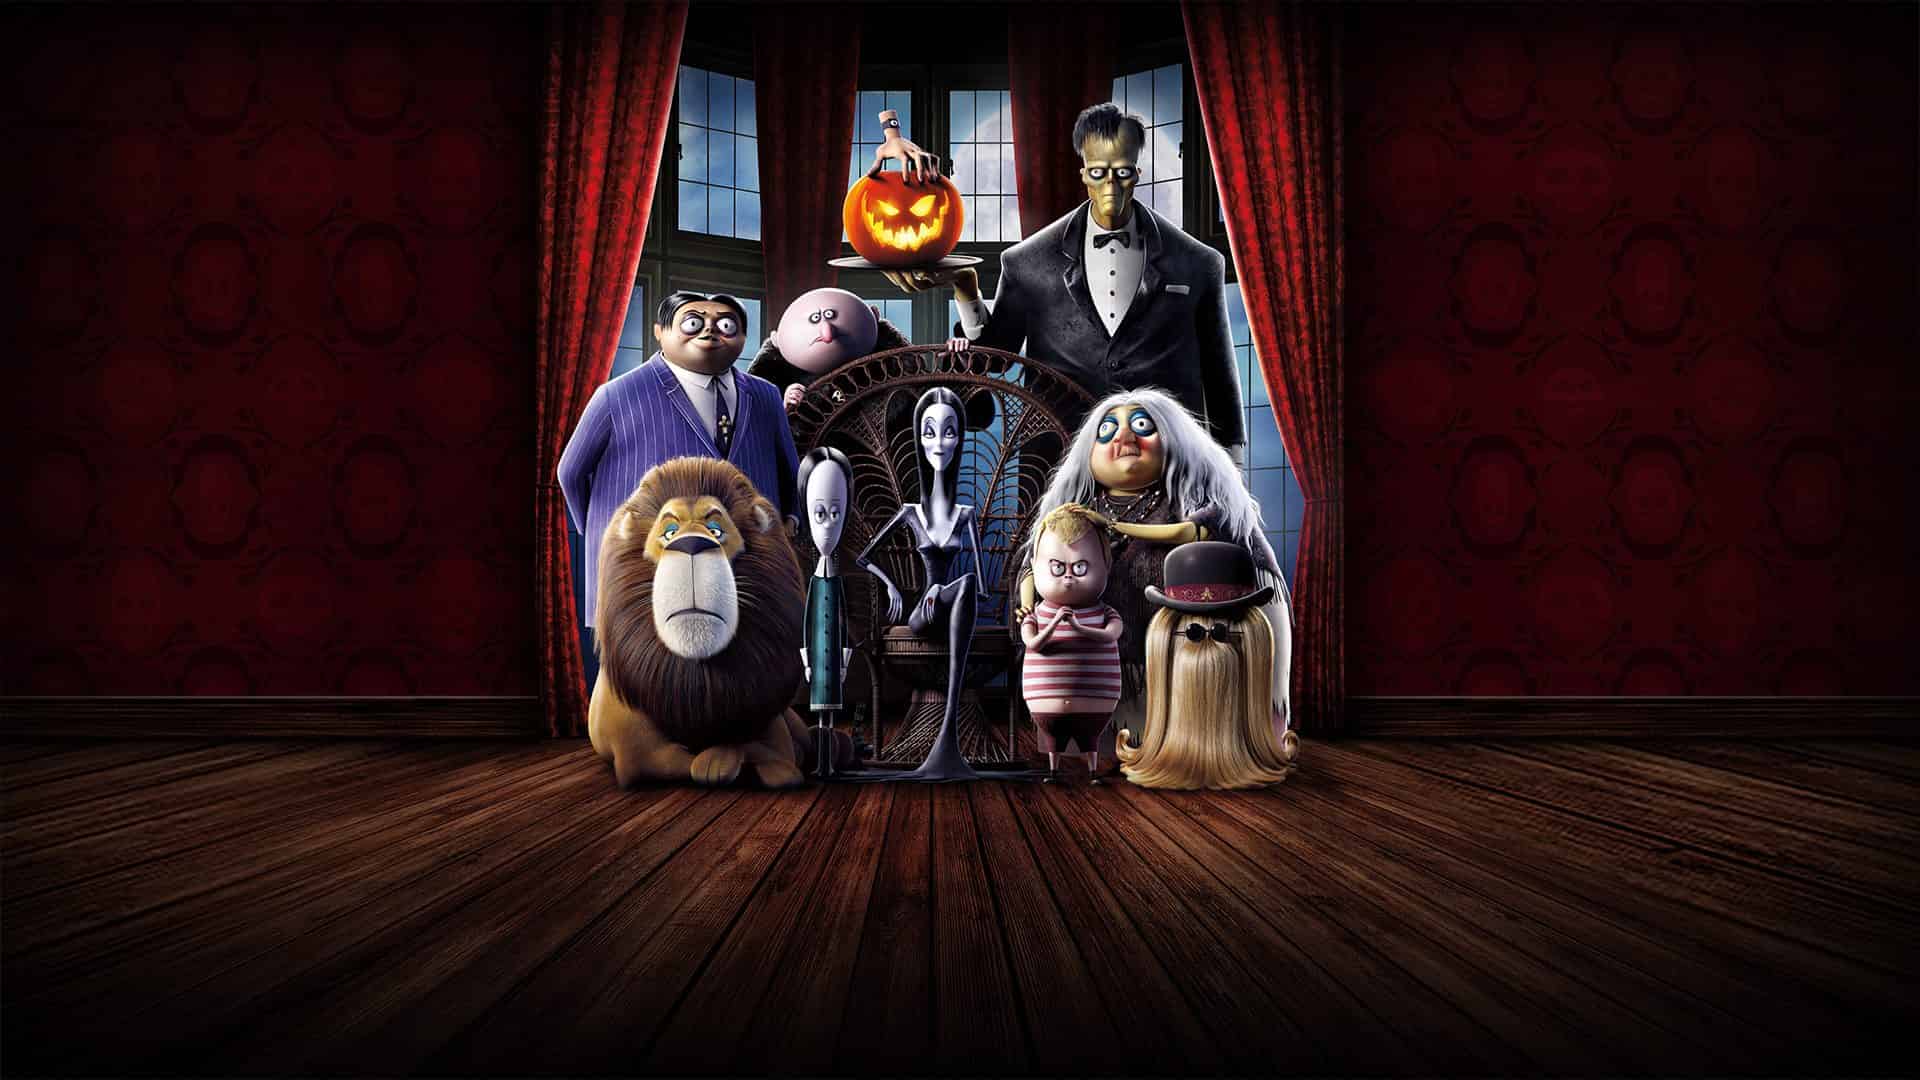 دانلود انیمیشن The Addams Family 2019